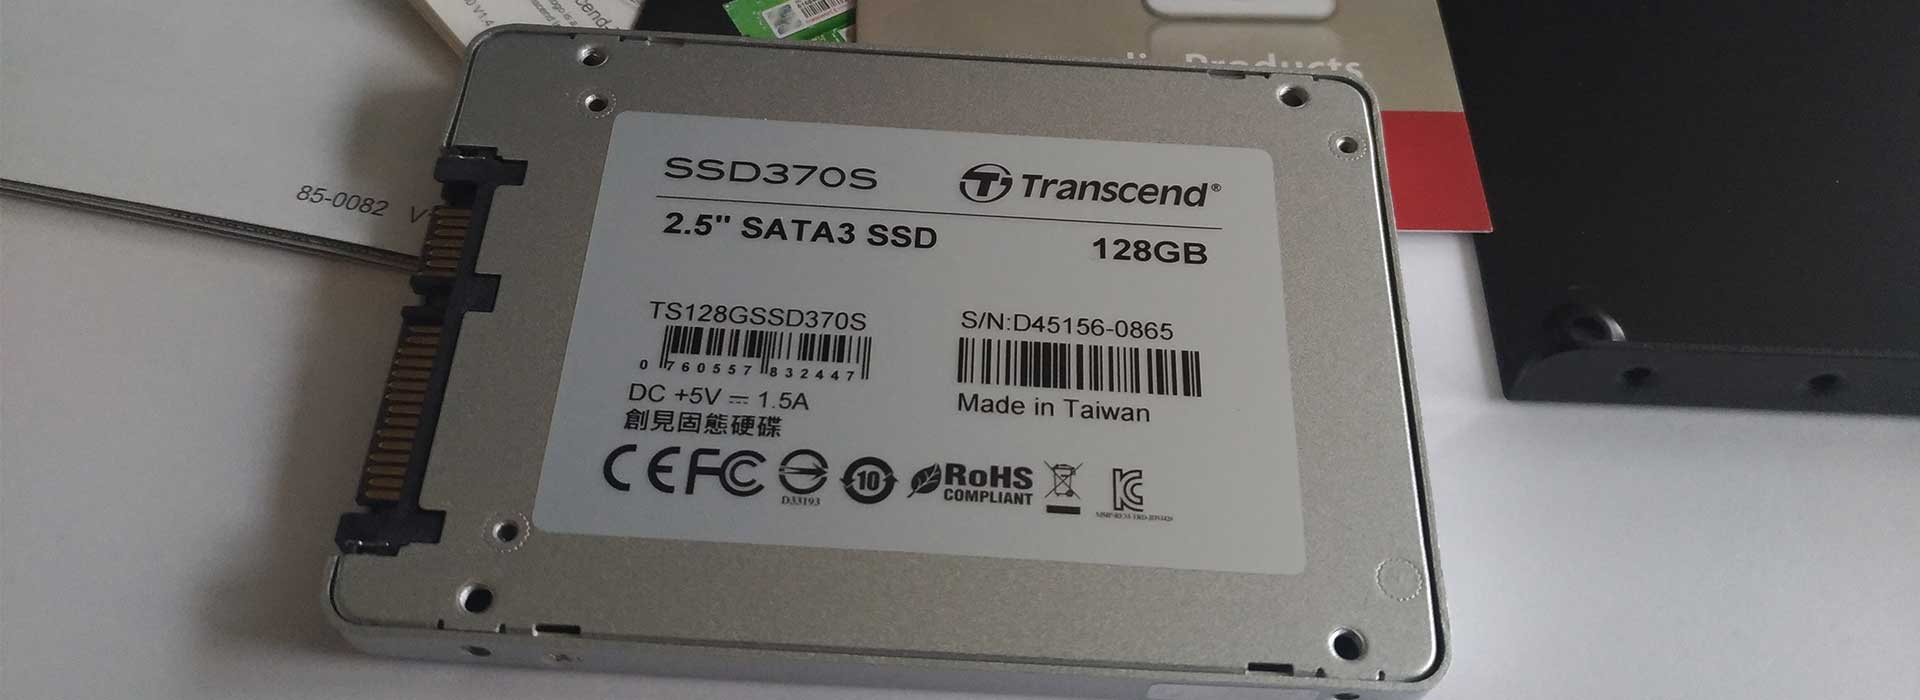 [PL] Dysk SSD Transcend SSD370S